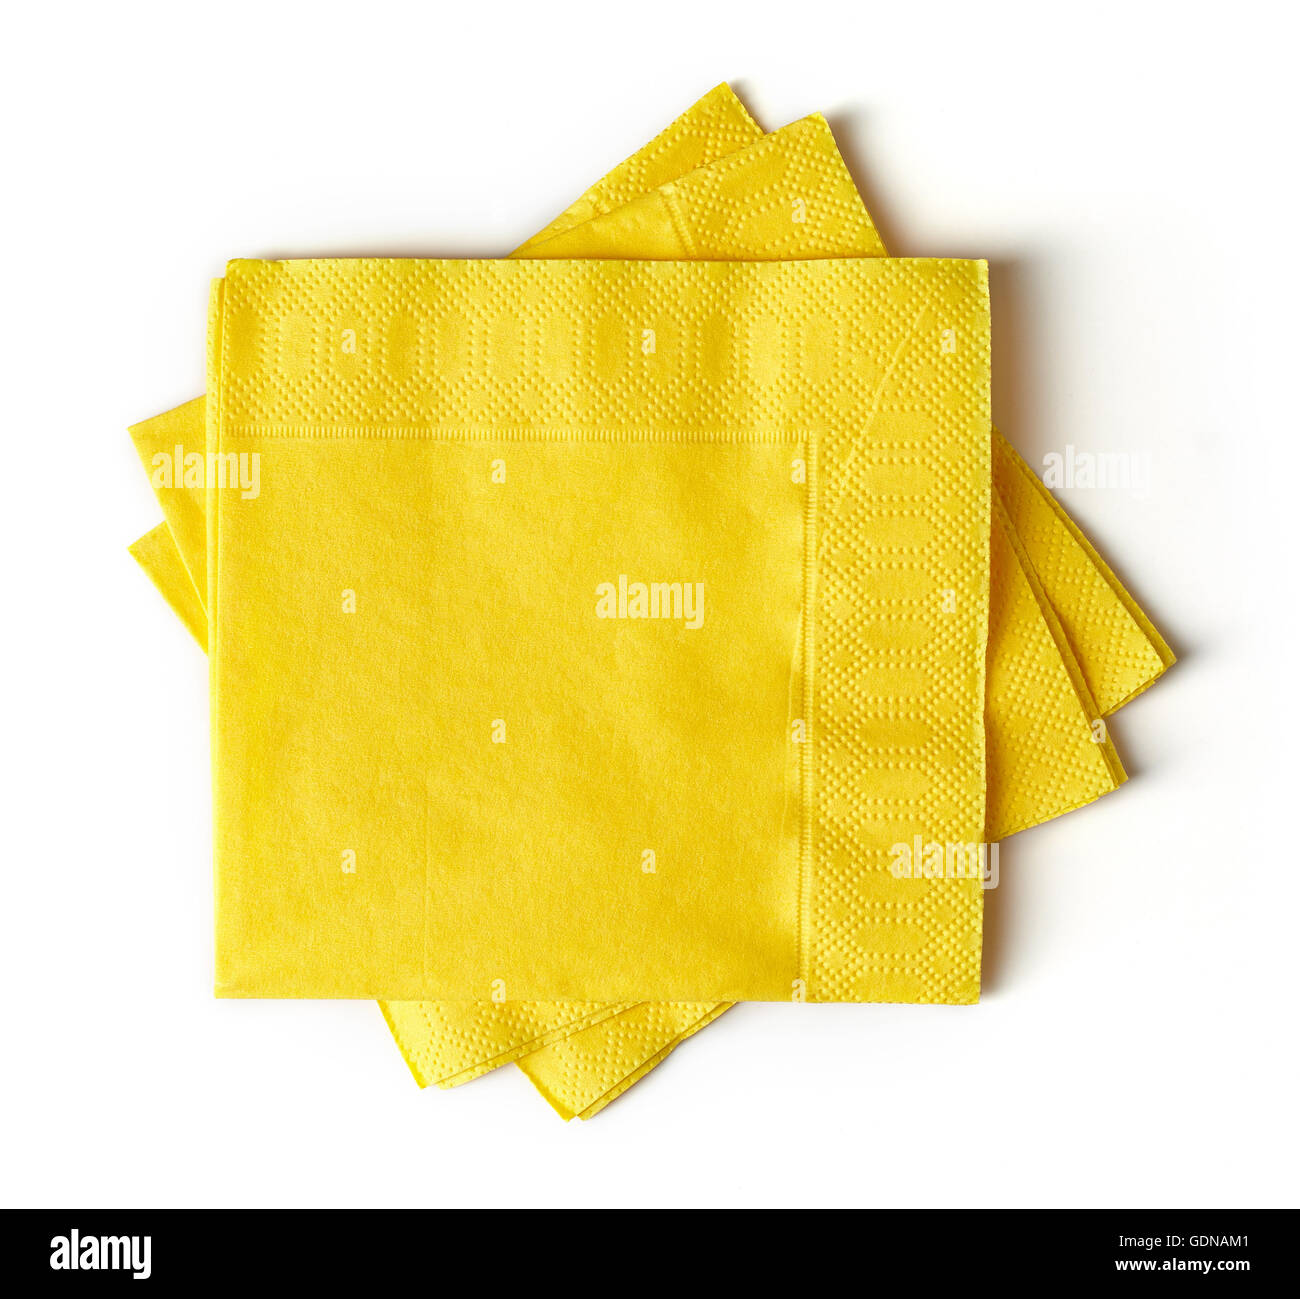 Serviette papier marguerittes sur fonds jaune orangé - Un grand marché